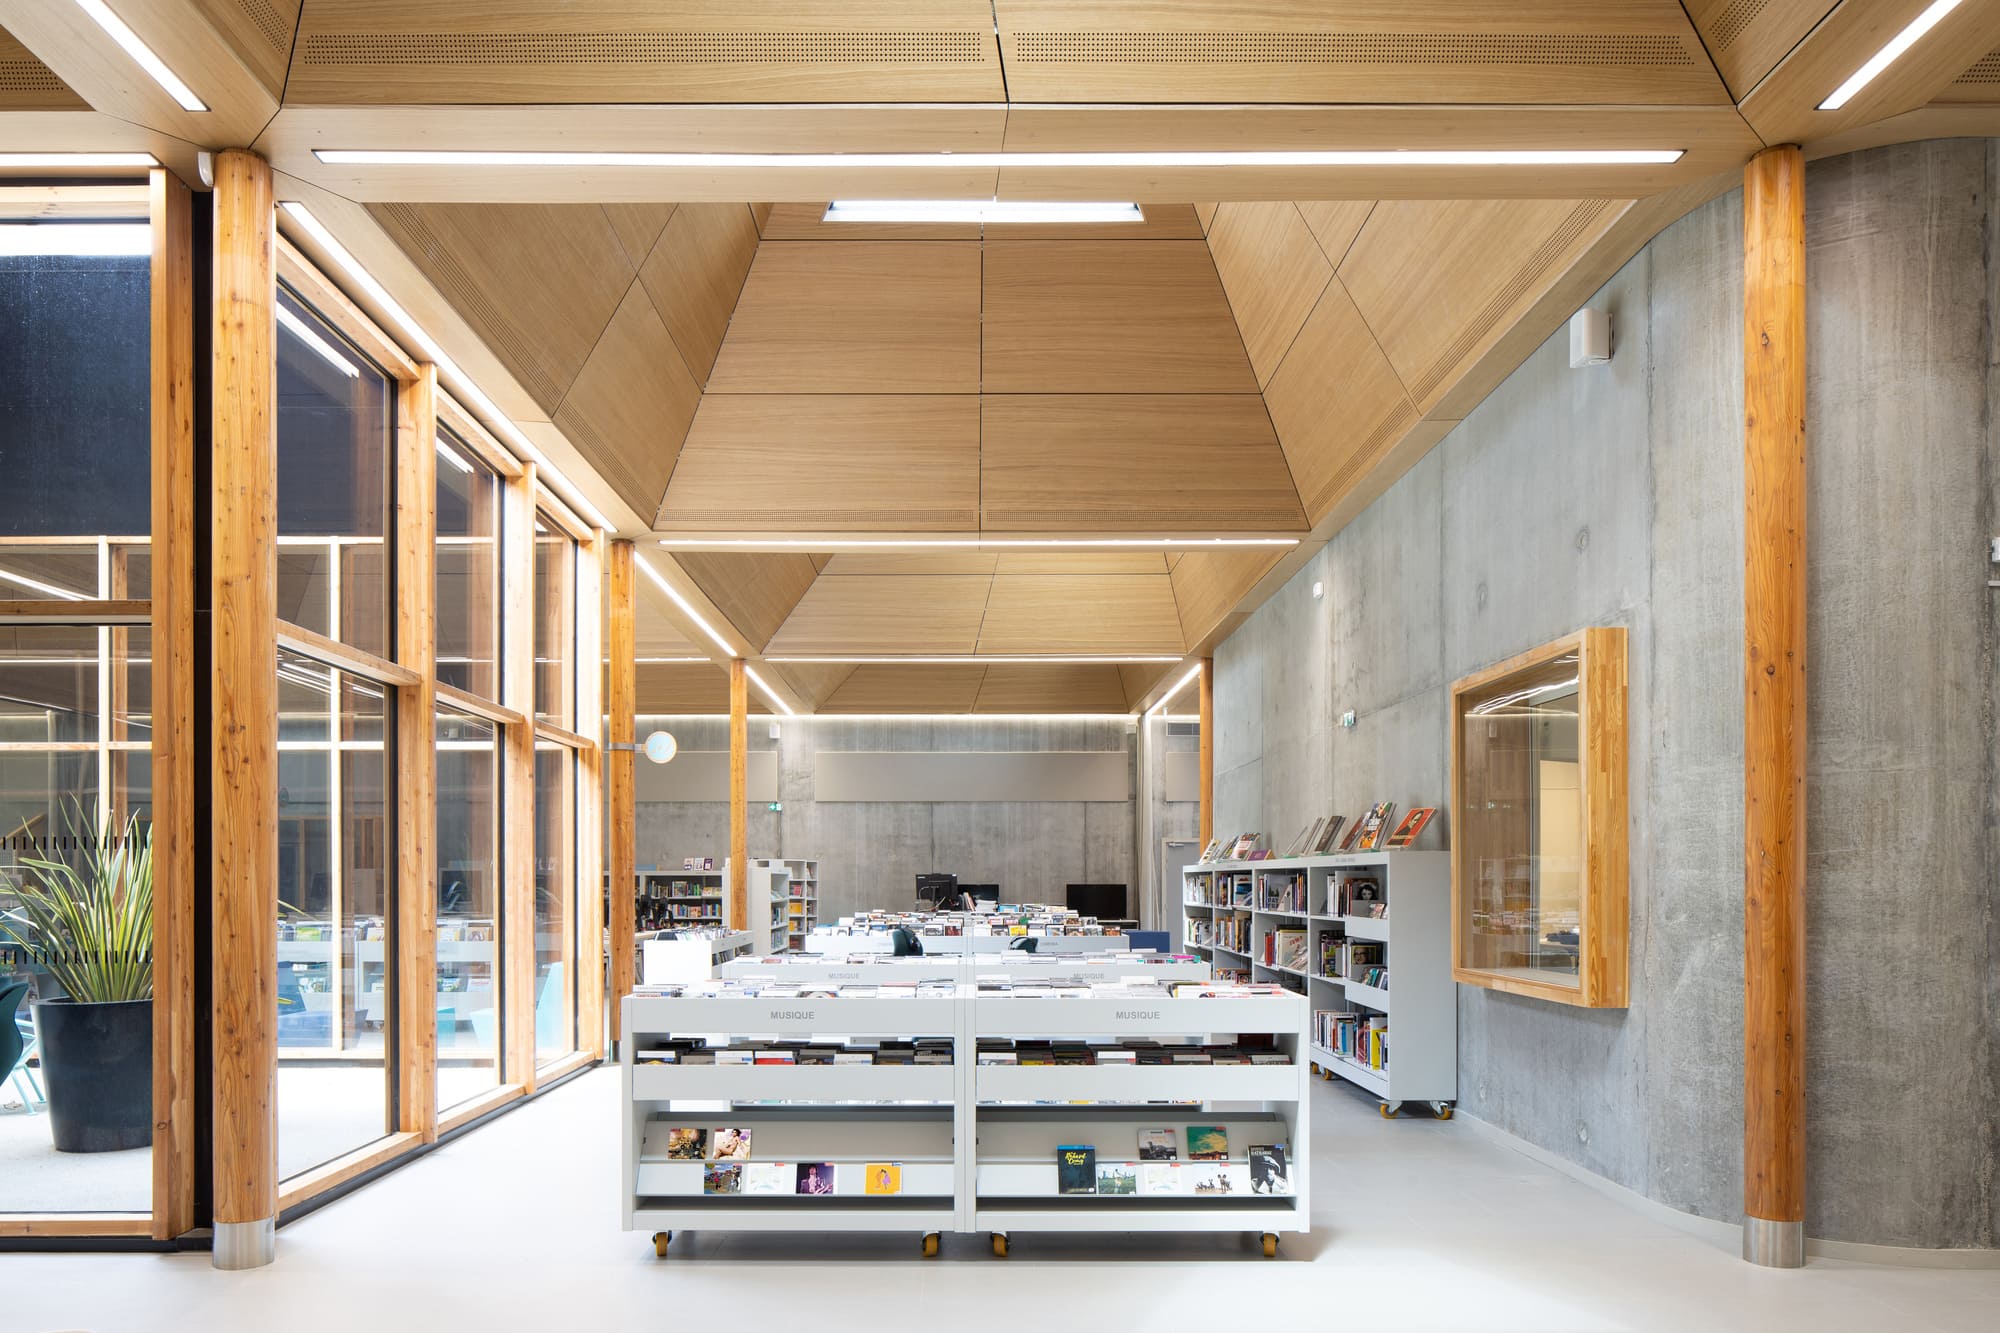 Pierre Veilletet Library in Bordeaux